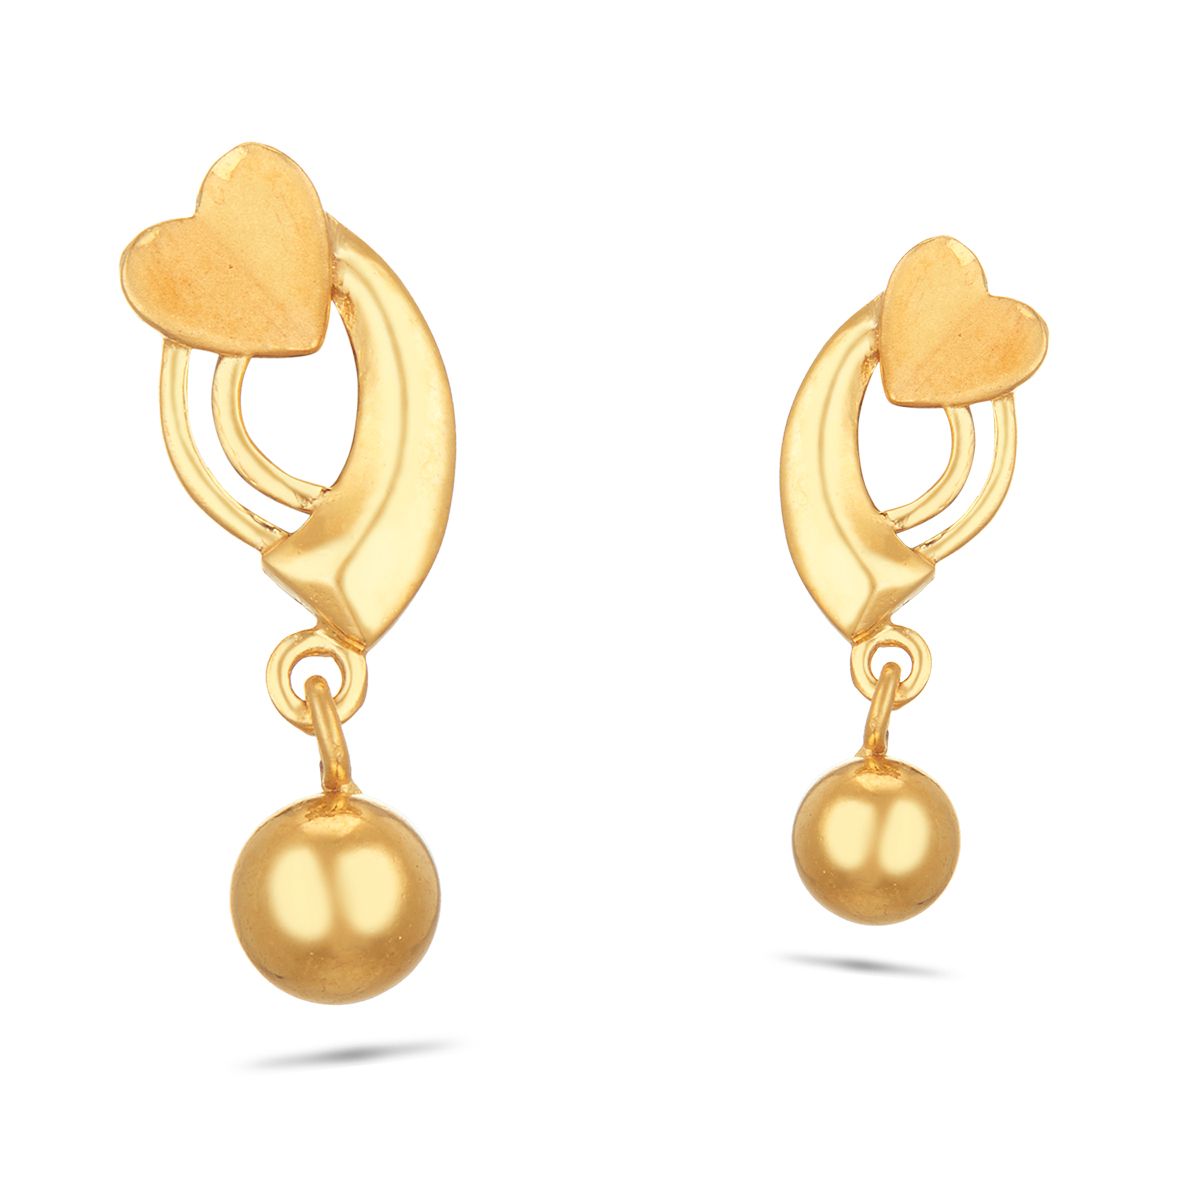 Buy Gold Hoop Earrings, Small Gold Hoop Earrings, Unique Gold Hoop Earrings,  Gold Plated Bobble Earrings, Short Hoop Earrings, Everyday Earrings Online  in India - Etsy